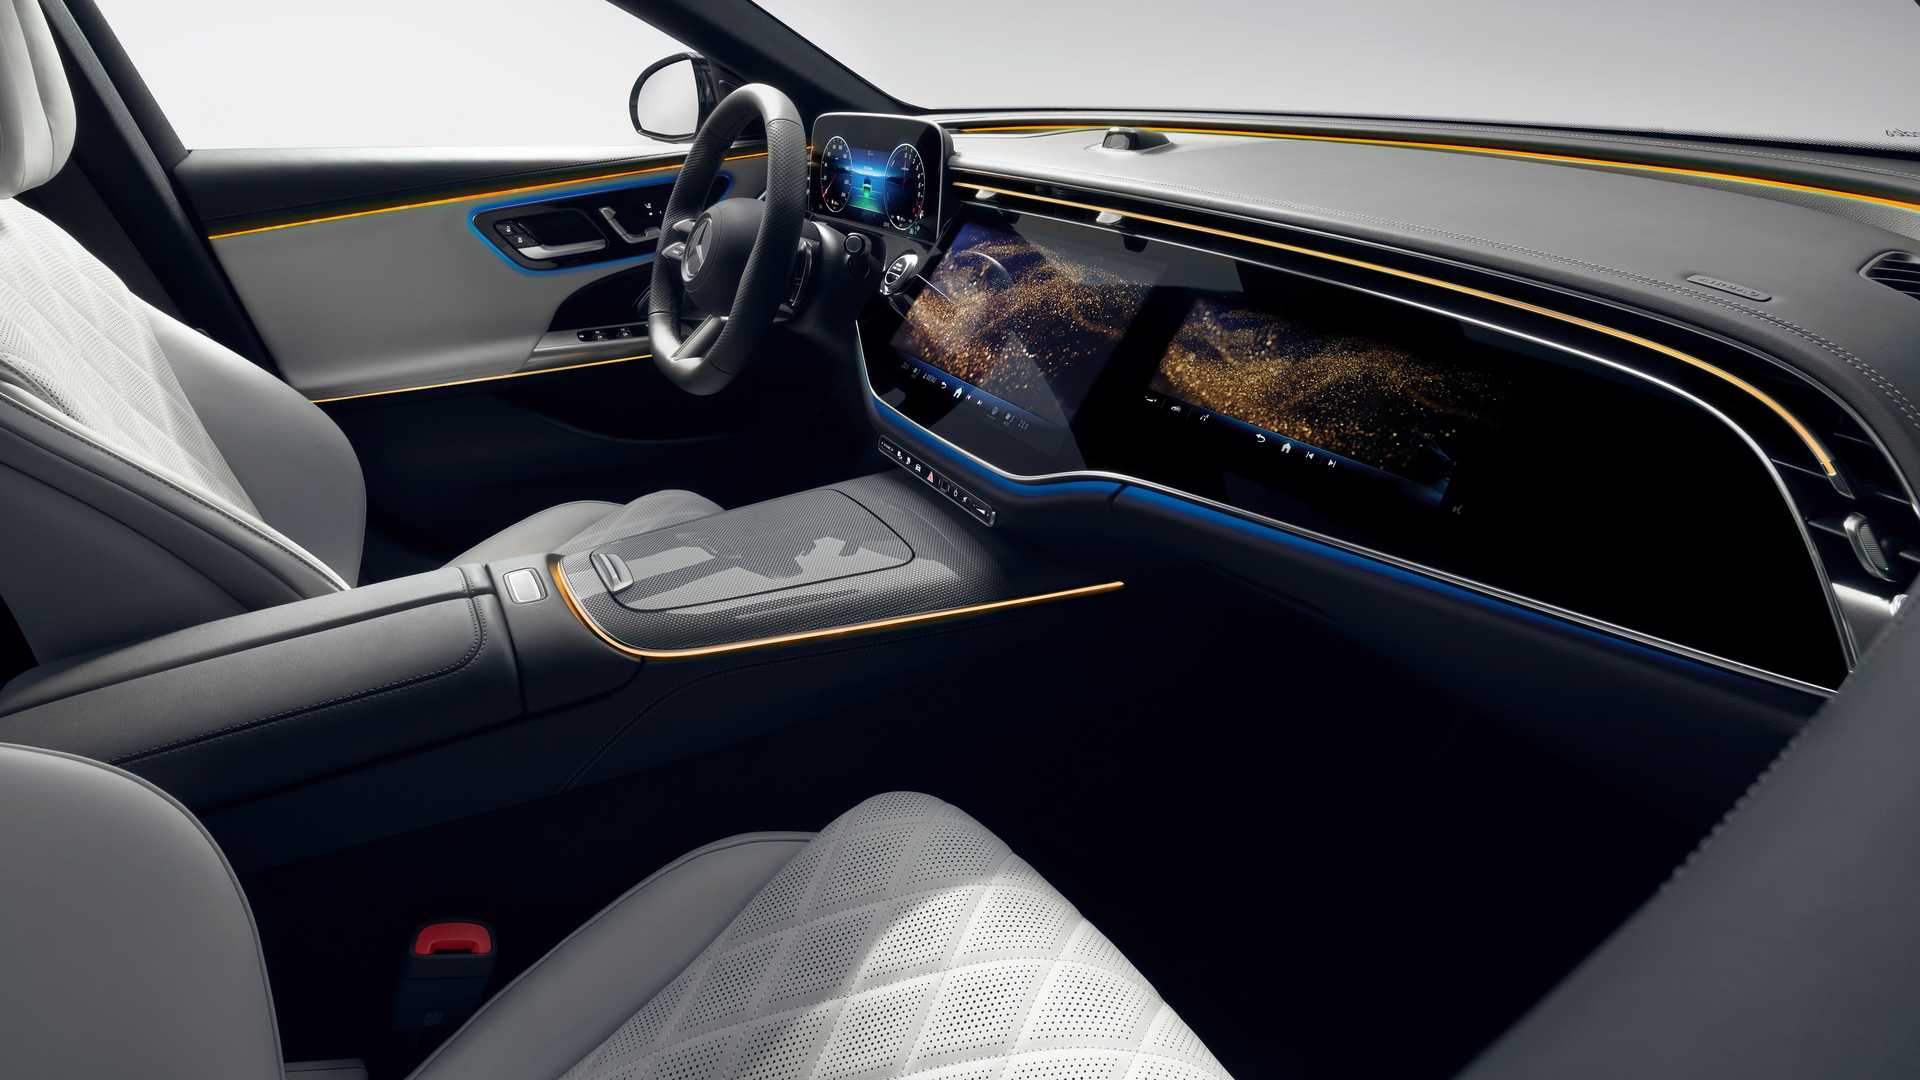 Mercedes-Benz công bố sớm nội thất E-Class mới với màn hình khổng lồ, TikTok và camera selfie mặc định - Ảnh 11.